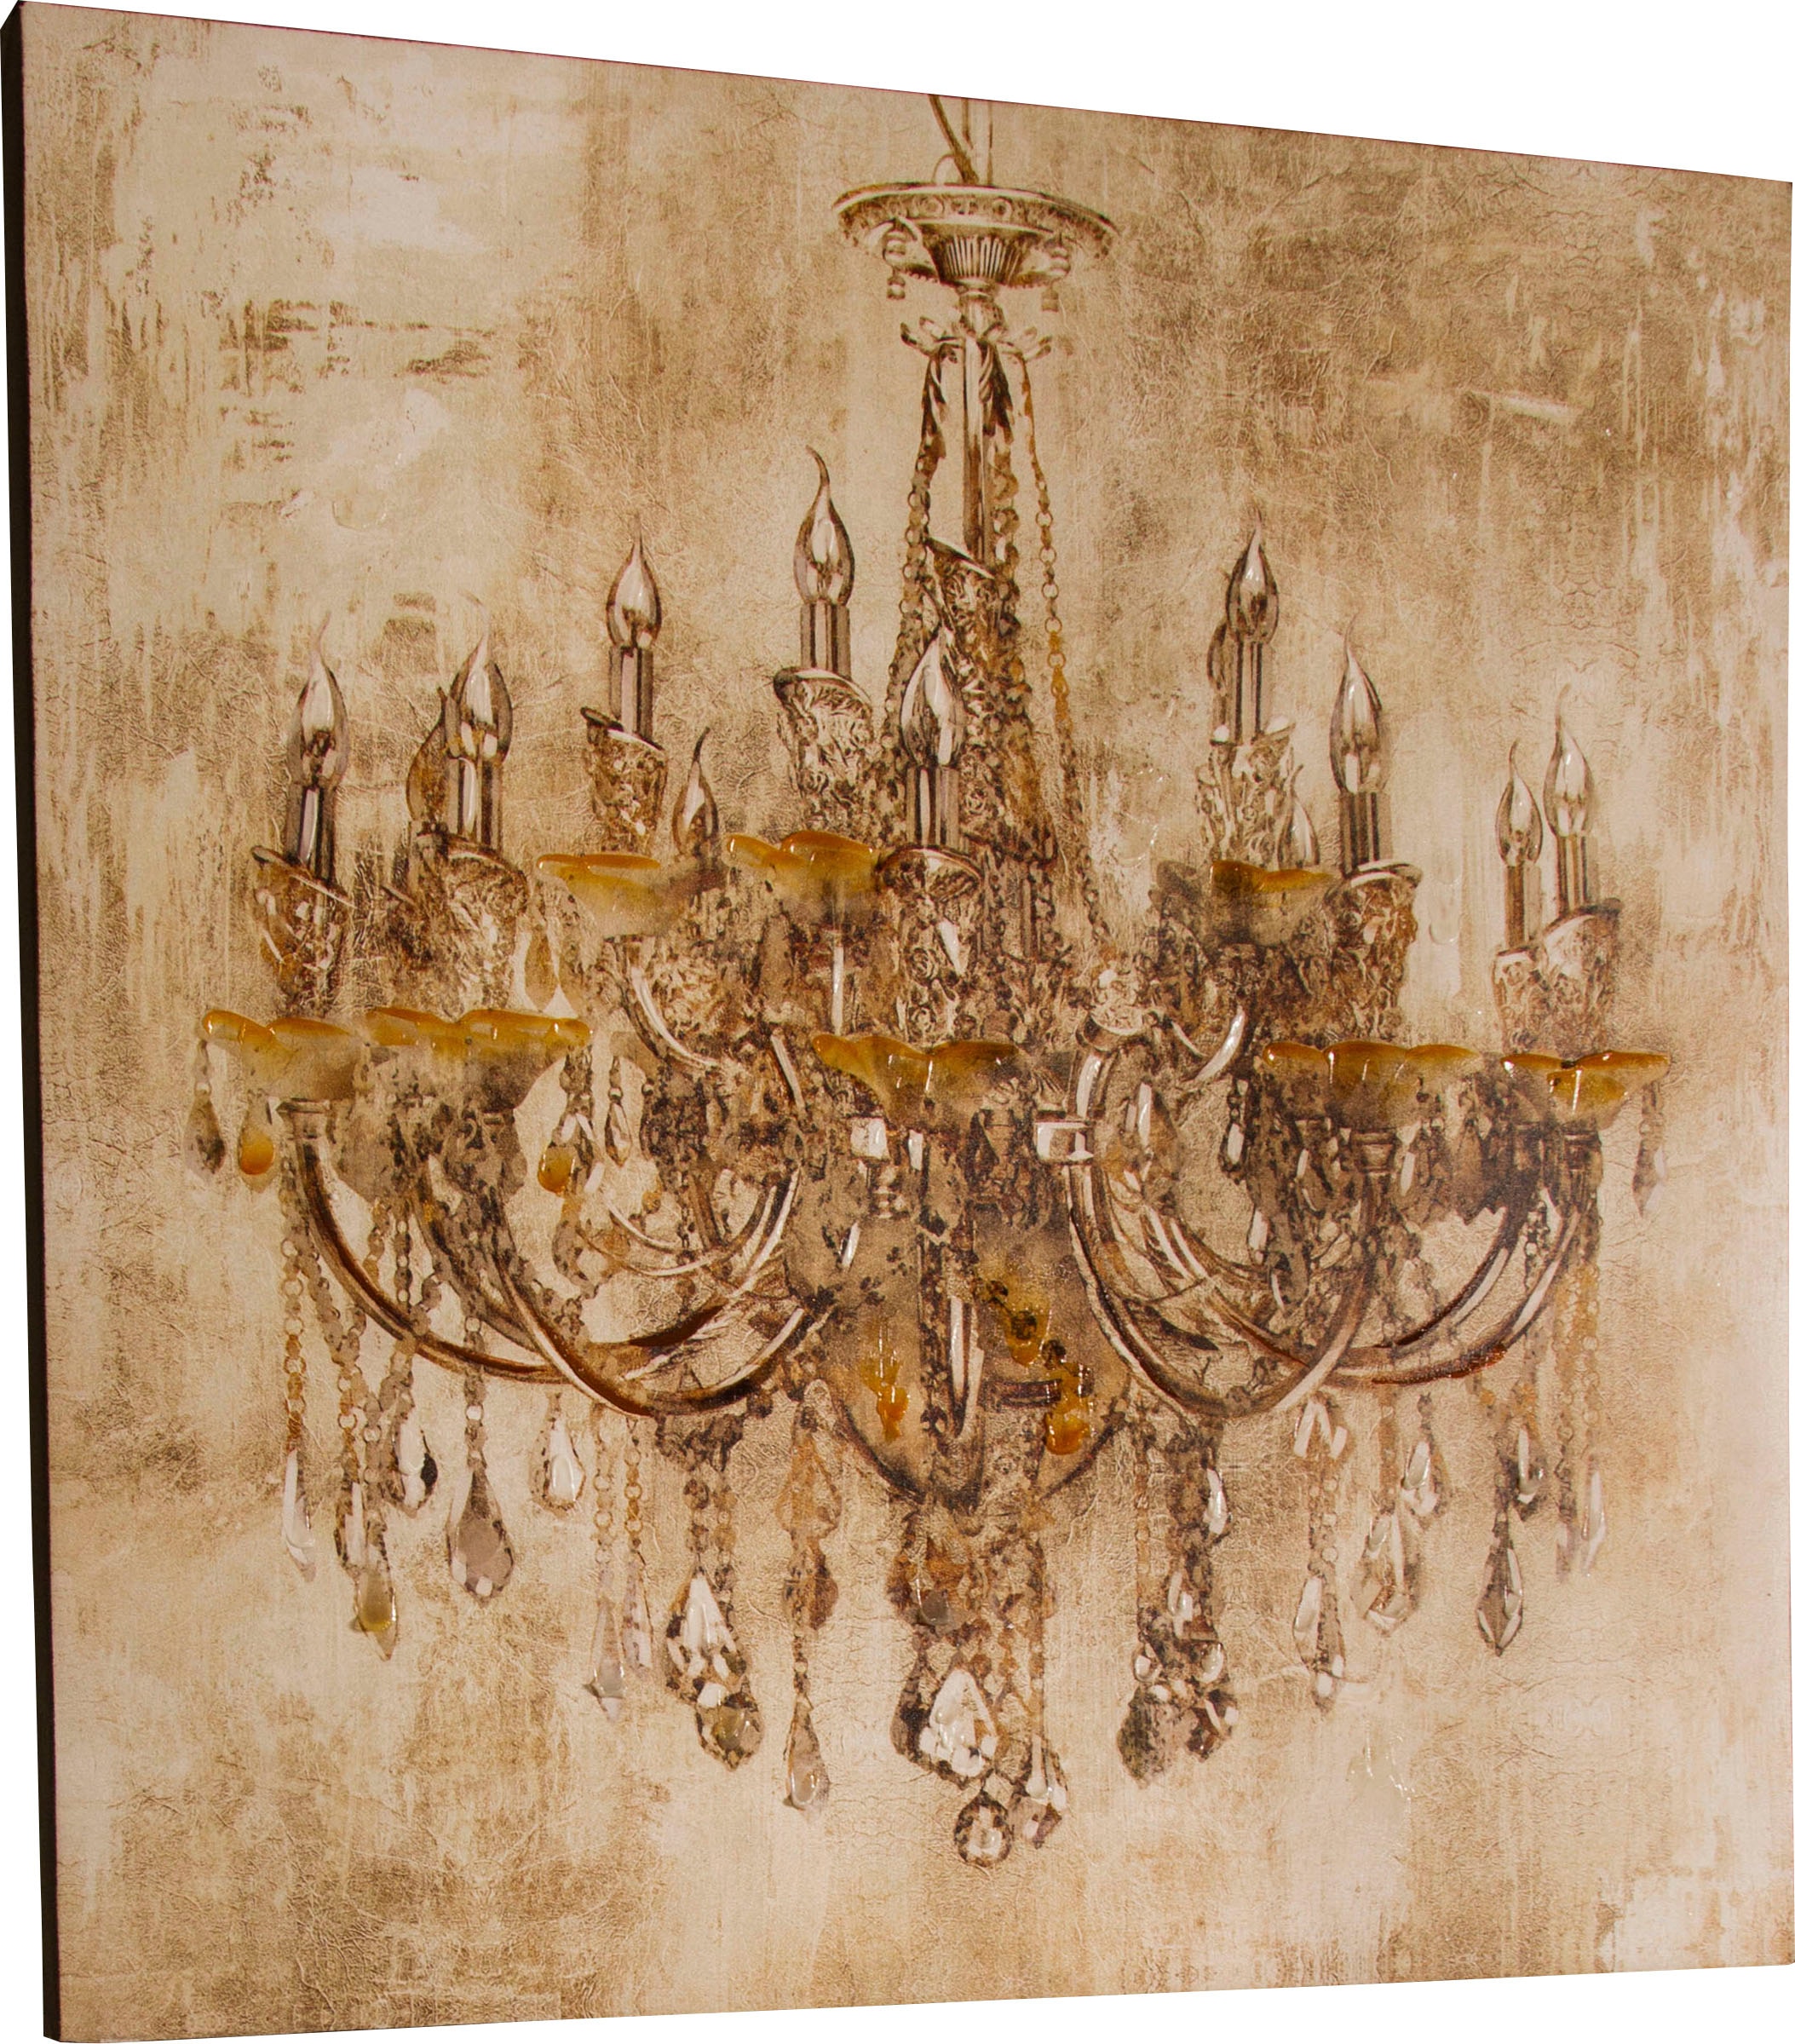 Myflair Möbel & Accessoires Ölbild »Candela«, Gemälde, Bild auf Leinwand, Motiv Kronleuchter, 80x80 cm, Wohnzimmer